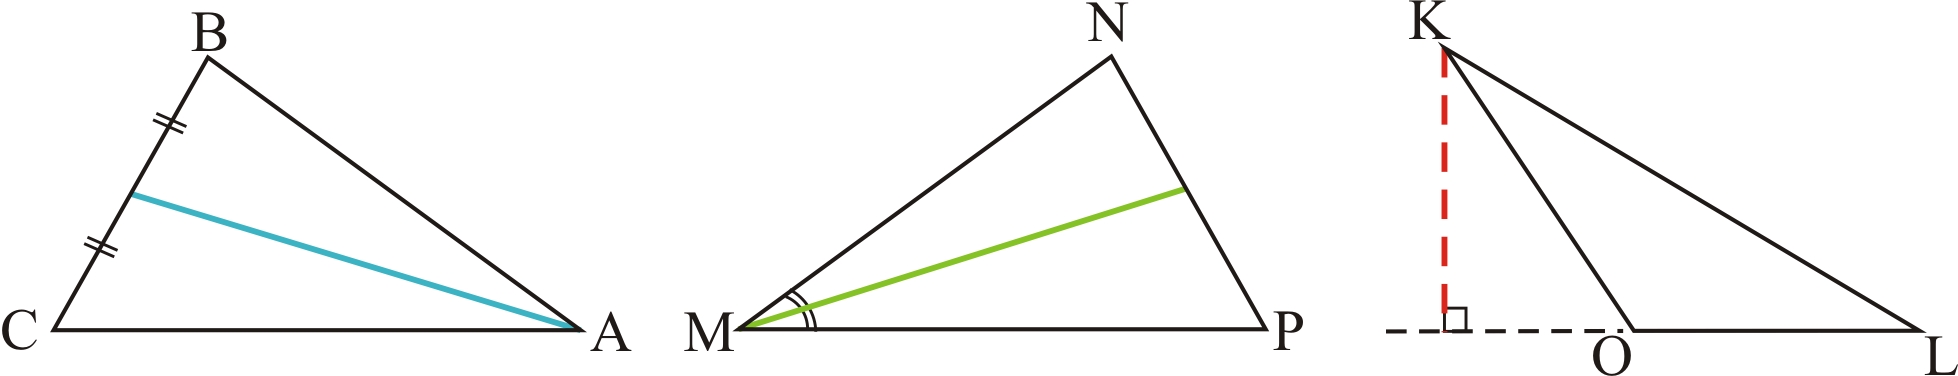 Конспект урока геометрии в 7 классе. Свойства равнобедренного треугольника учебник Л.Г.Атанасян